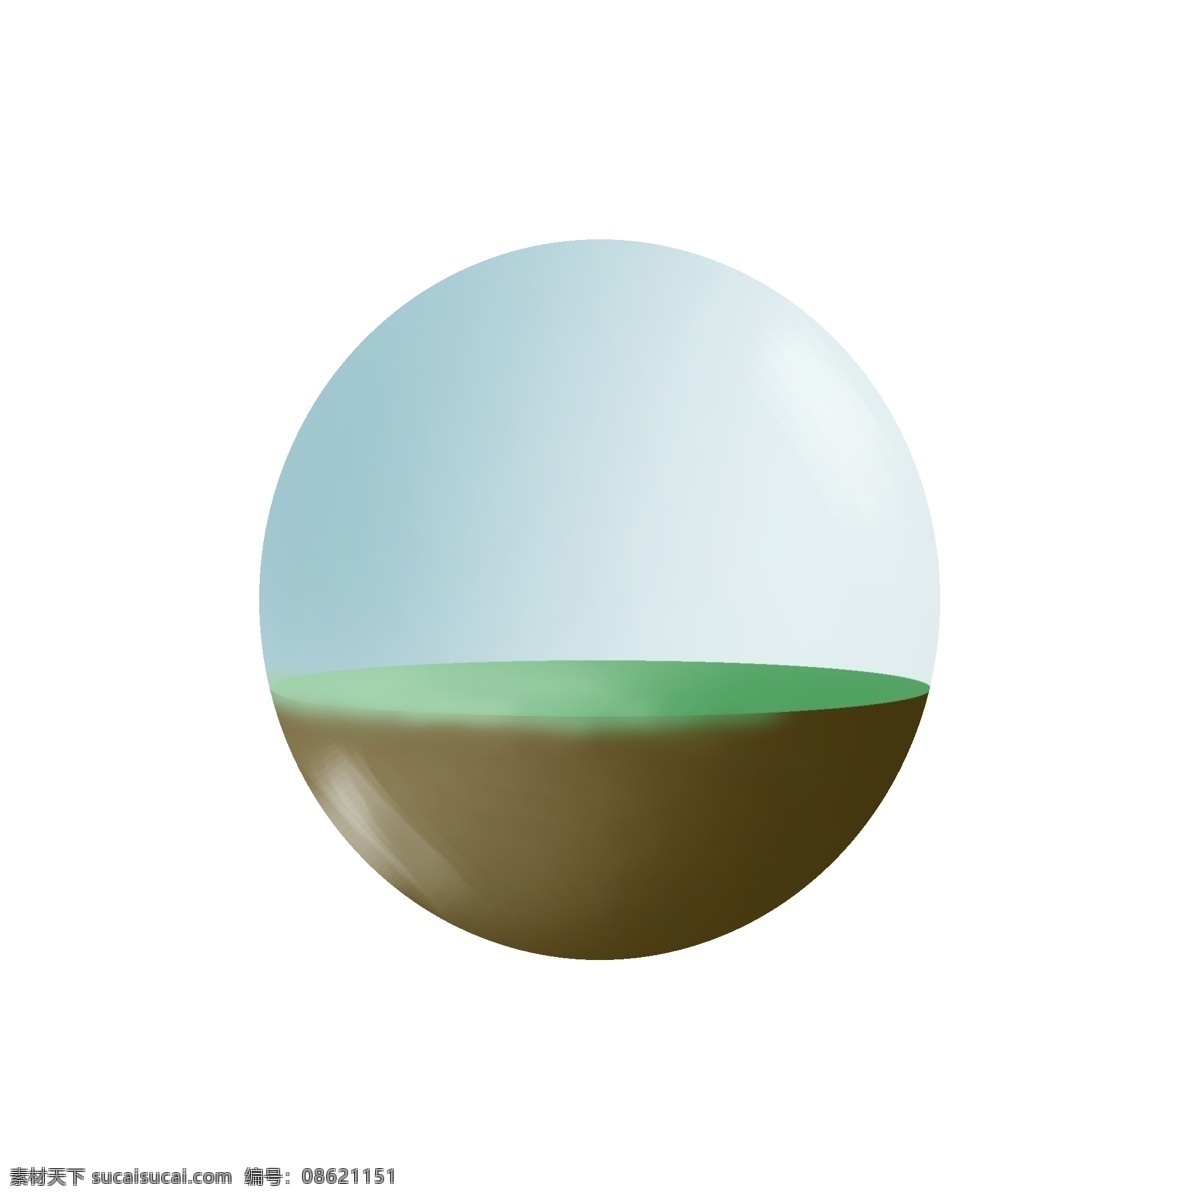 草地 通用 词 玻璃球 通用词 玻璃球景观 玻璃球草地 卡通手绘 装饰图案 免扣图png 手绘